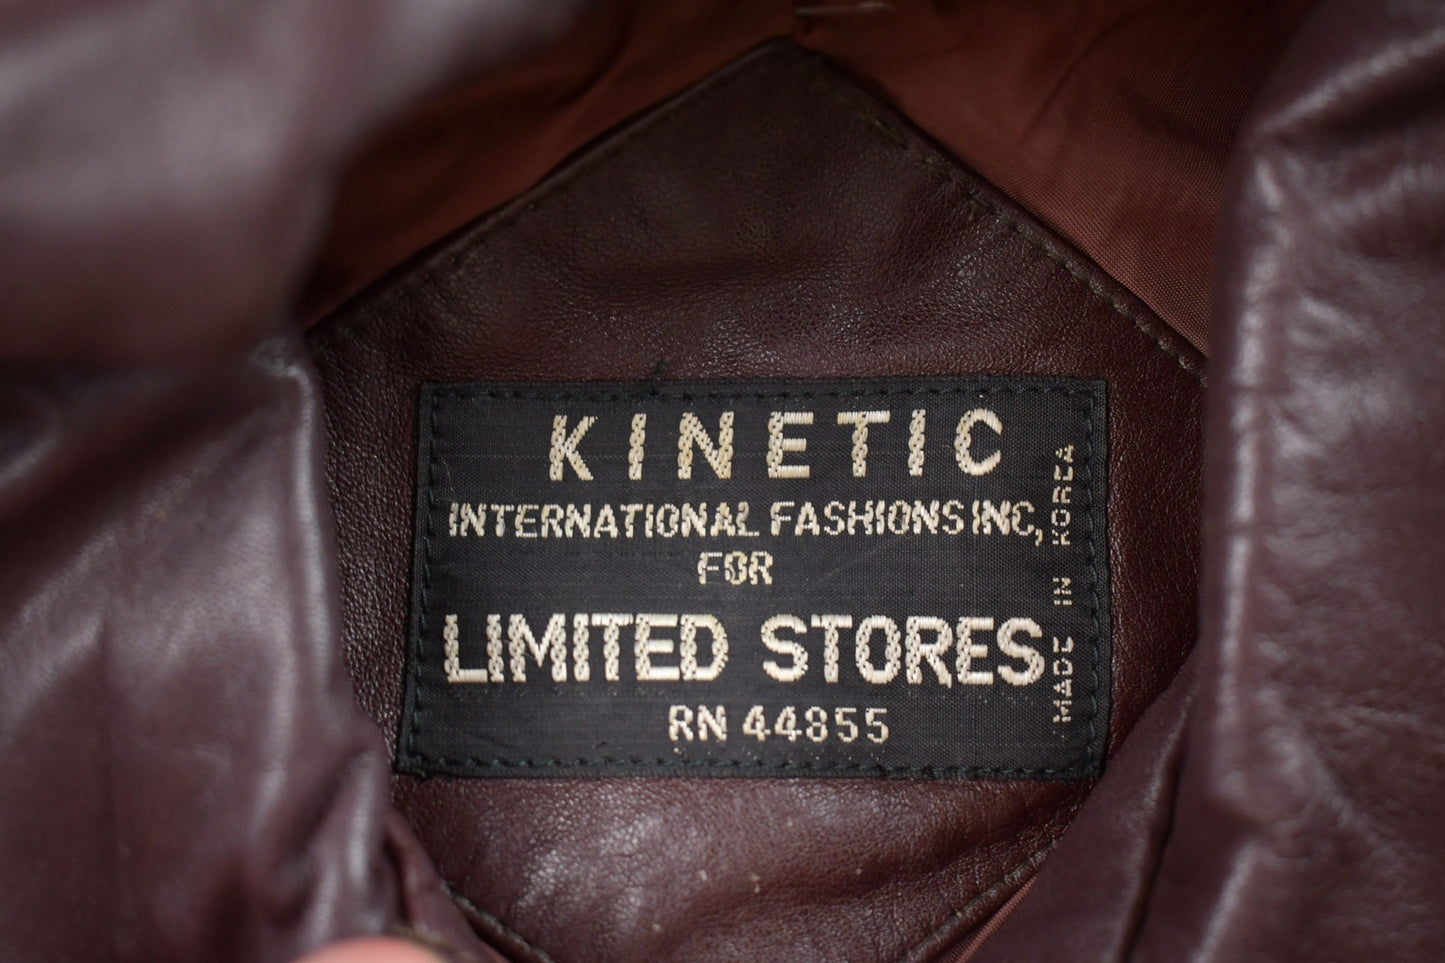 Vintage 1980s Kinetic Leather Jacket / Fall Outerwear / Leather Coat / Winter Outerwear / Streetwear Fashion / Suede Jacket / Biker Jacket